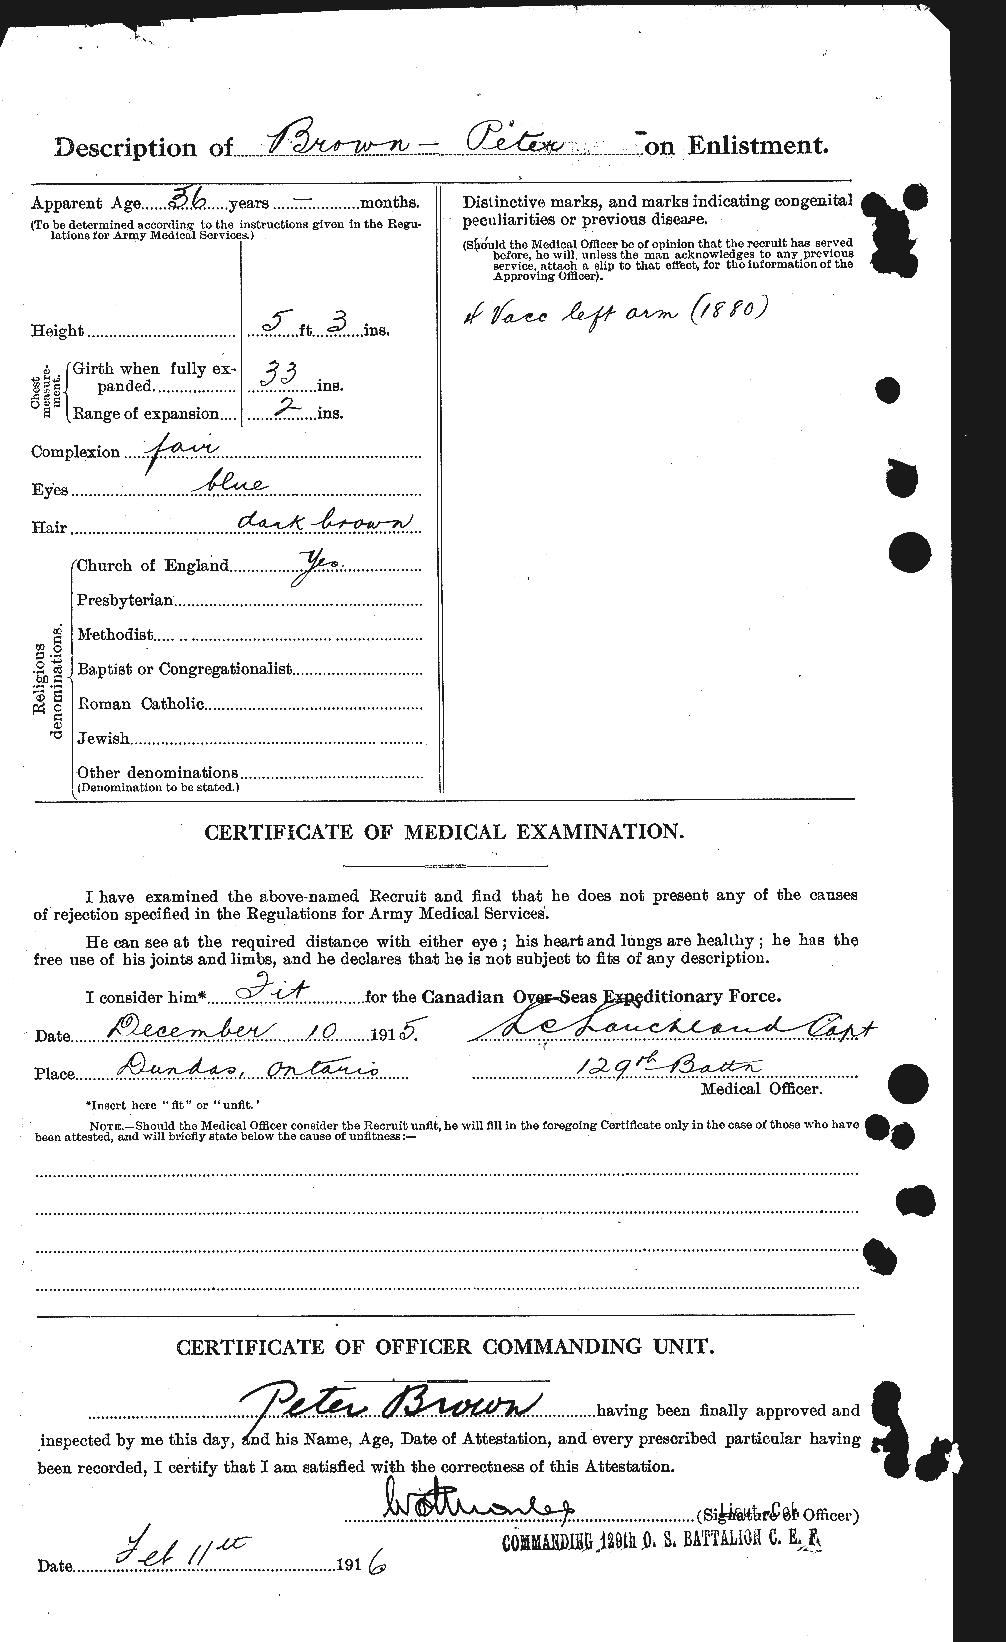 Dossiers du Personnel de la Première Guerre mondiale - CEC 267199b